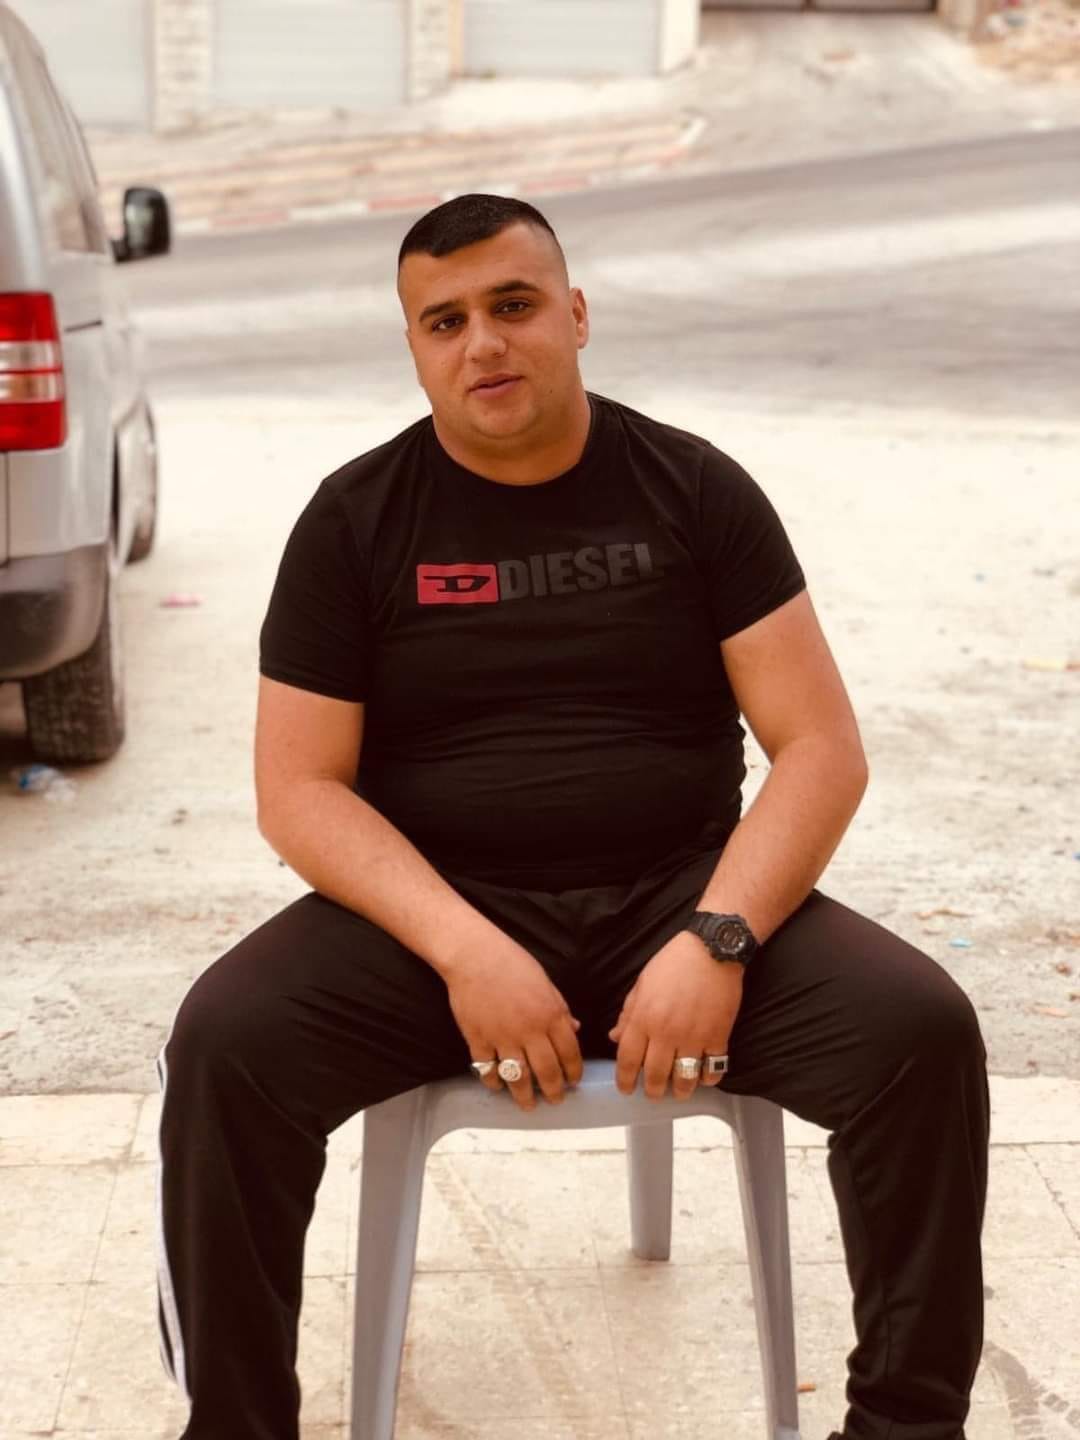 جهاد محمد وصفي الشامي (24 عامًا)، من عناصر مجموعة "عرين الأسود"، اغتالته قوة إسرائيلية خاصة في كمين عند حاجز صرة غرب نابلس يوم 12 آذار.